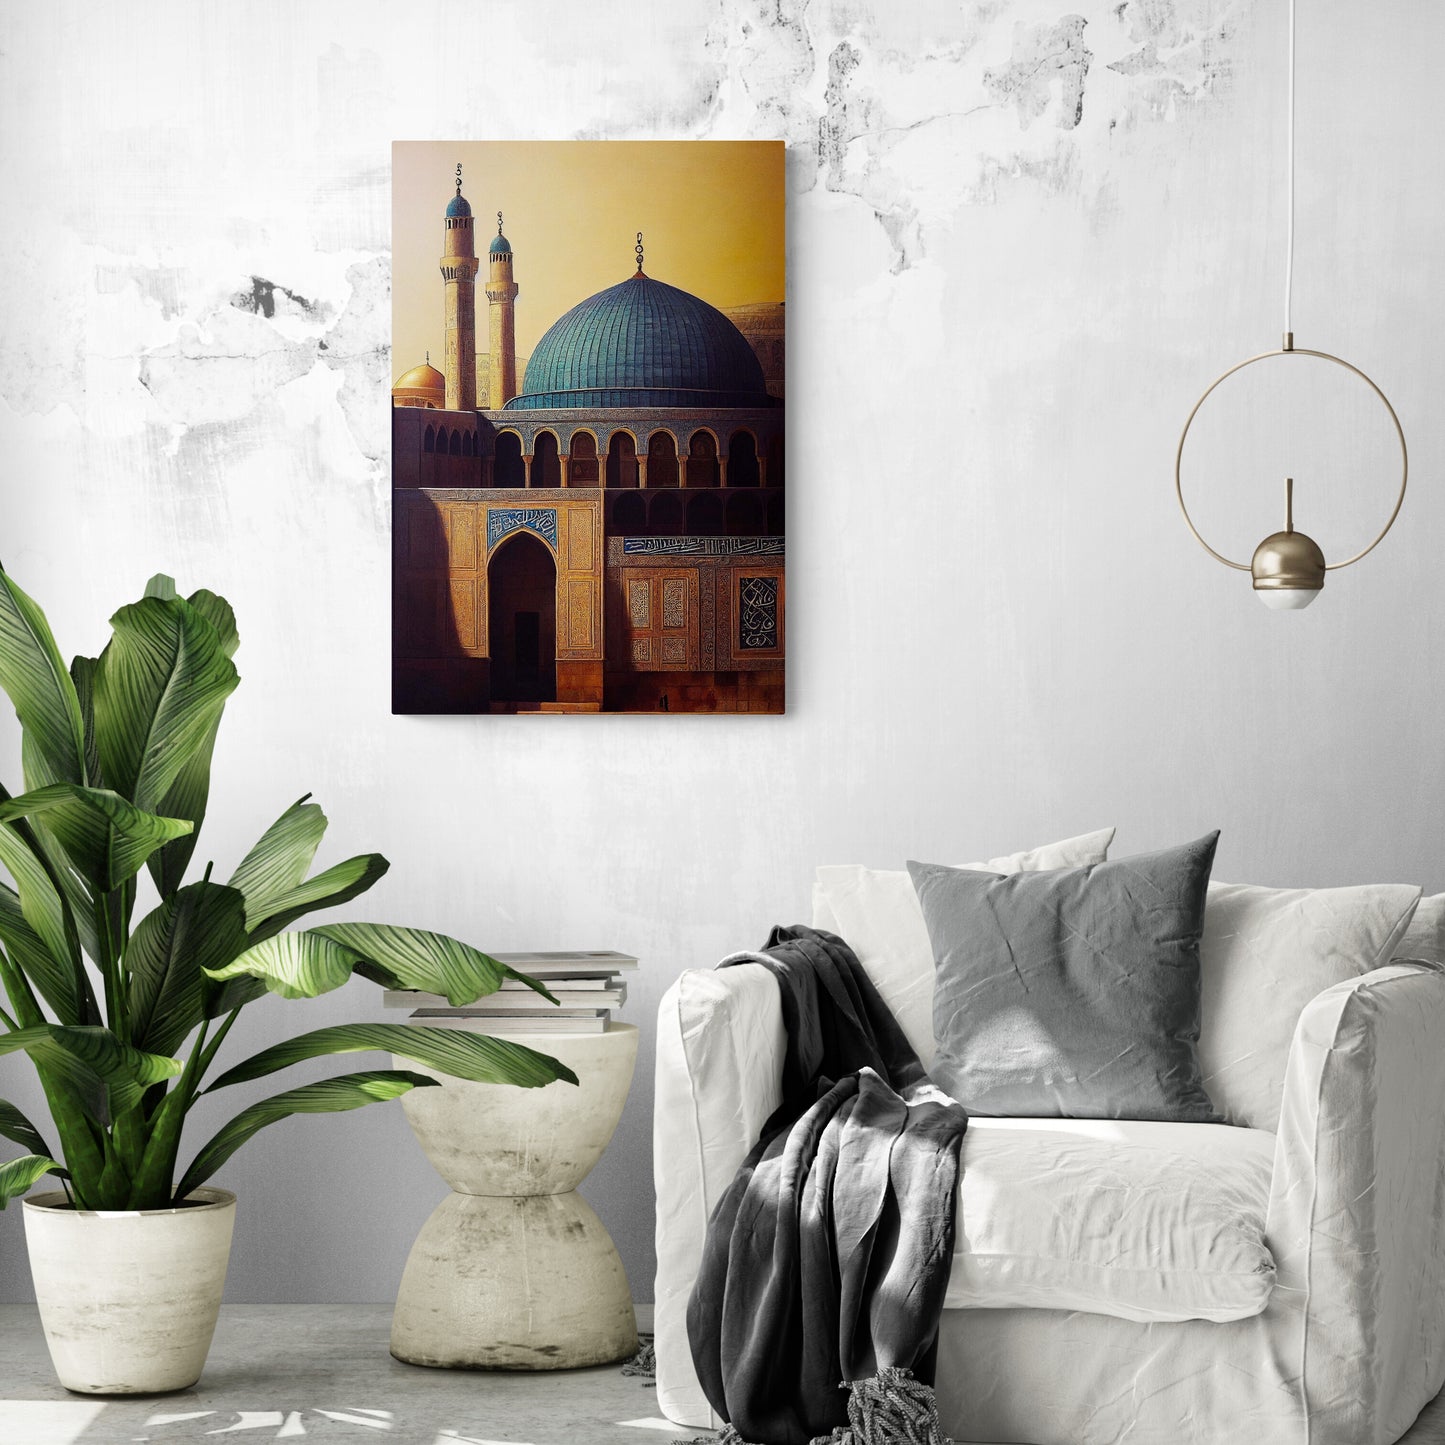 Tableau décoratif, la mosquée Al-Aqsa, sur le mur d'un salon, qui s'éveille au lever du soleil. Le grand dôme bleu turquoise s'illumine, tandis que les minarets s'élèvent fièrement vers le ciel. Les couleurs chaudes du marron et du bleu se marient à merveille, tandis que les inscriptions arabes apportent spiritualité. Le tableau est de taille moyenne